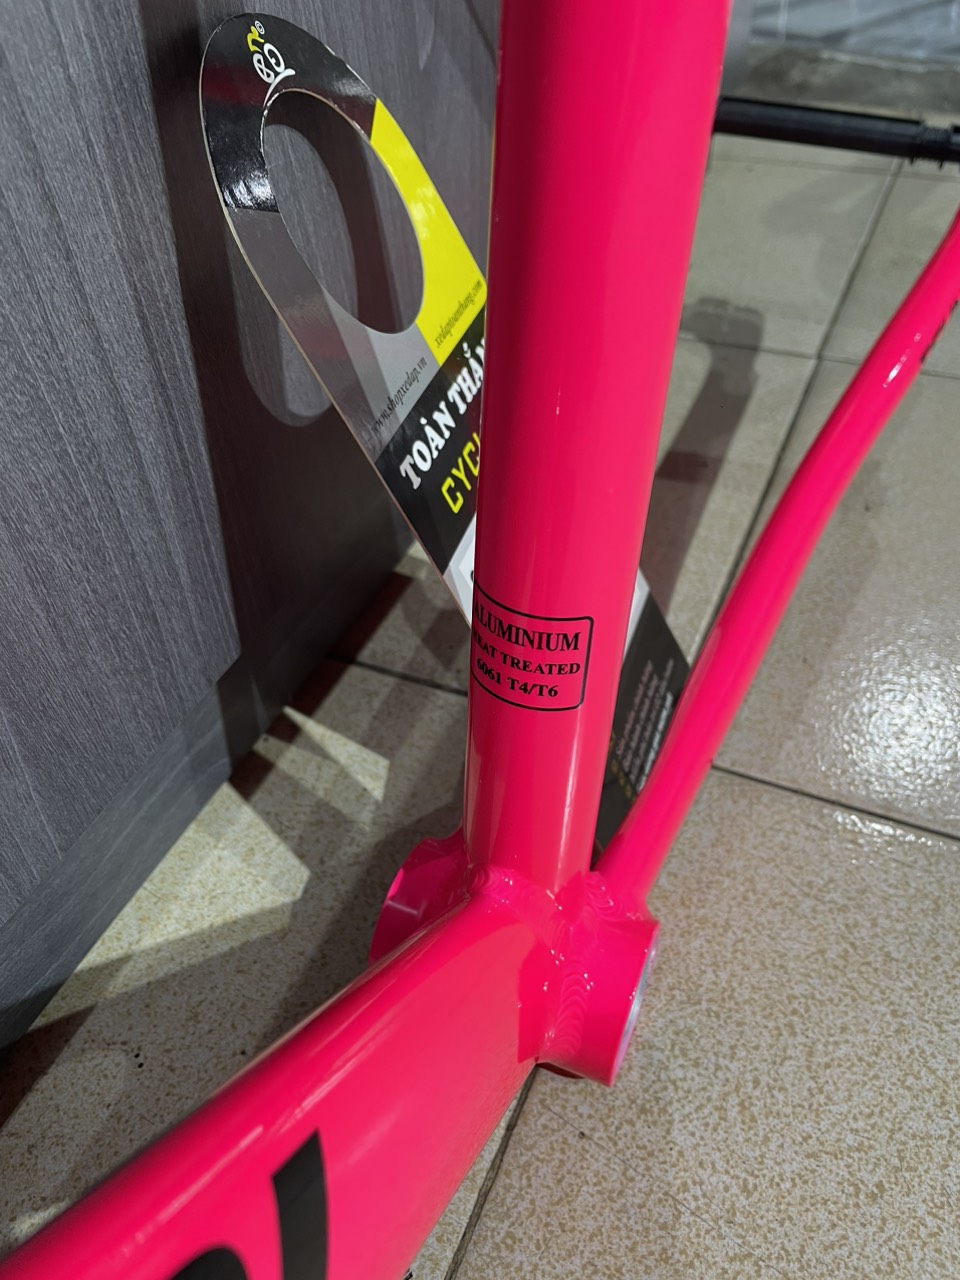 Khung sườn xe đạp Fixed Gear Tsunami SNM100 Pink